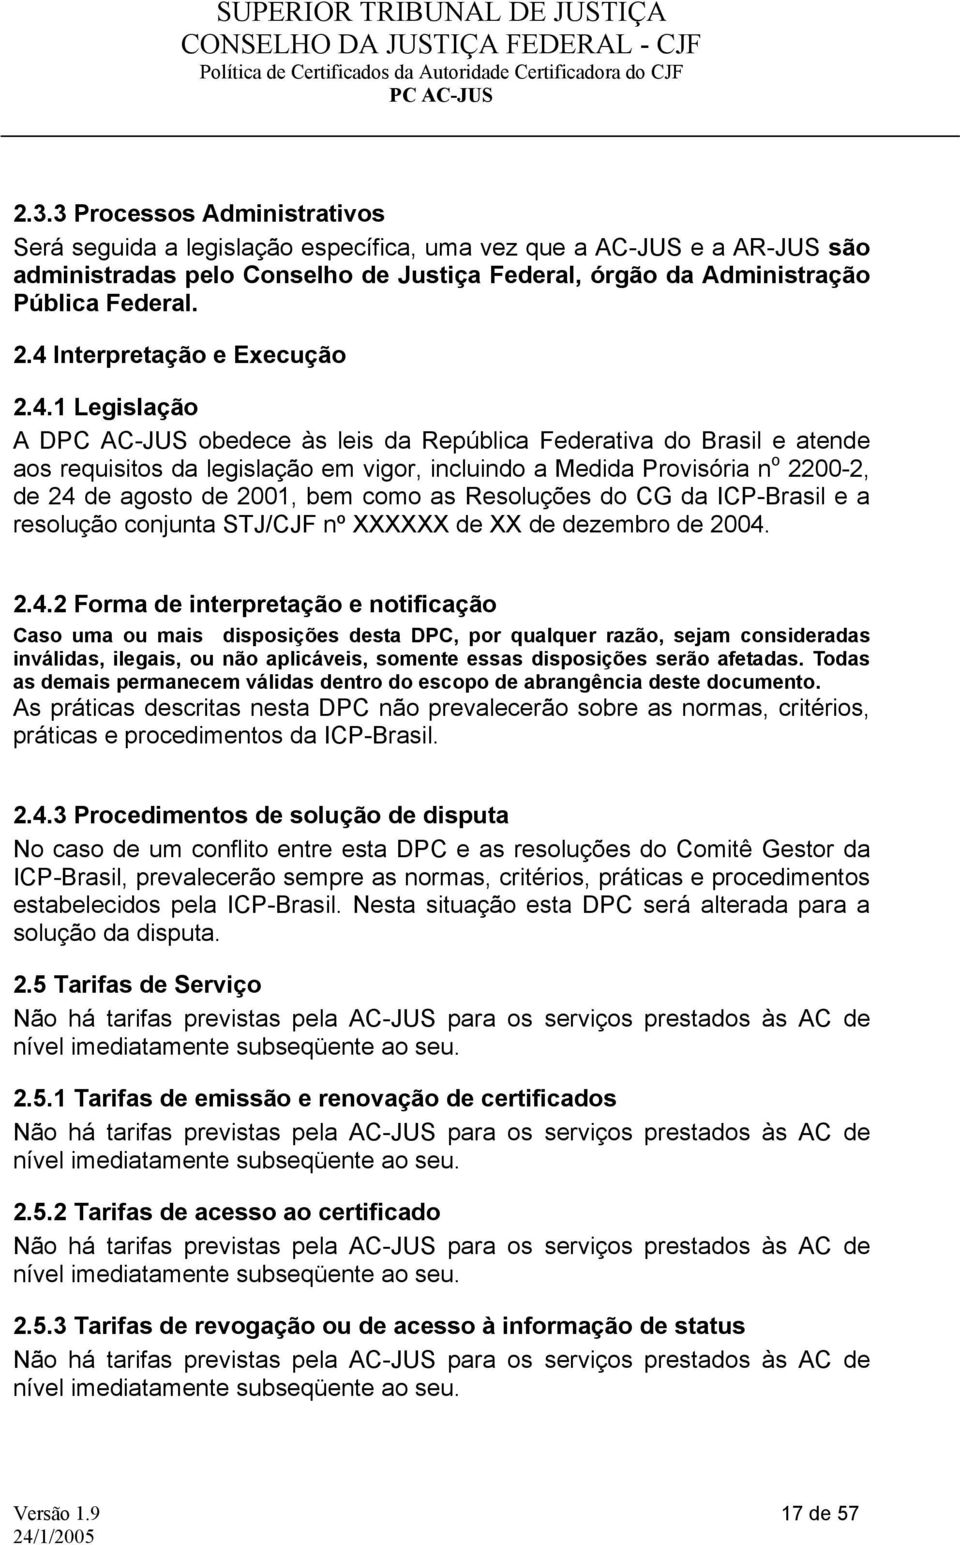 agosto de 2001, bem como as Resoluções do CG da ICP-Brasil e a resolução conjunta STJ/CJF nº XXXXXX de XX de dezembro de 2004.